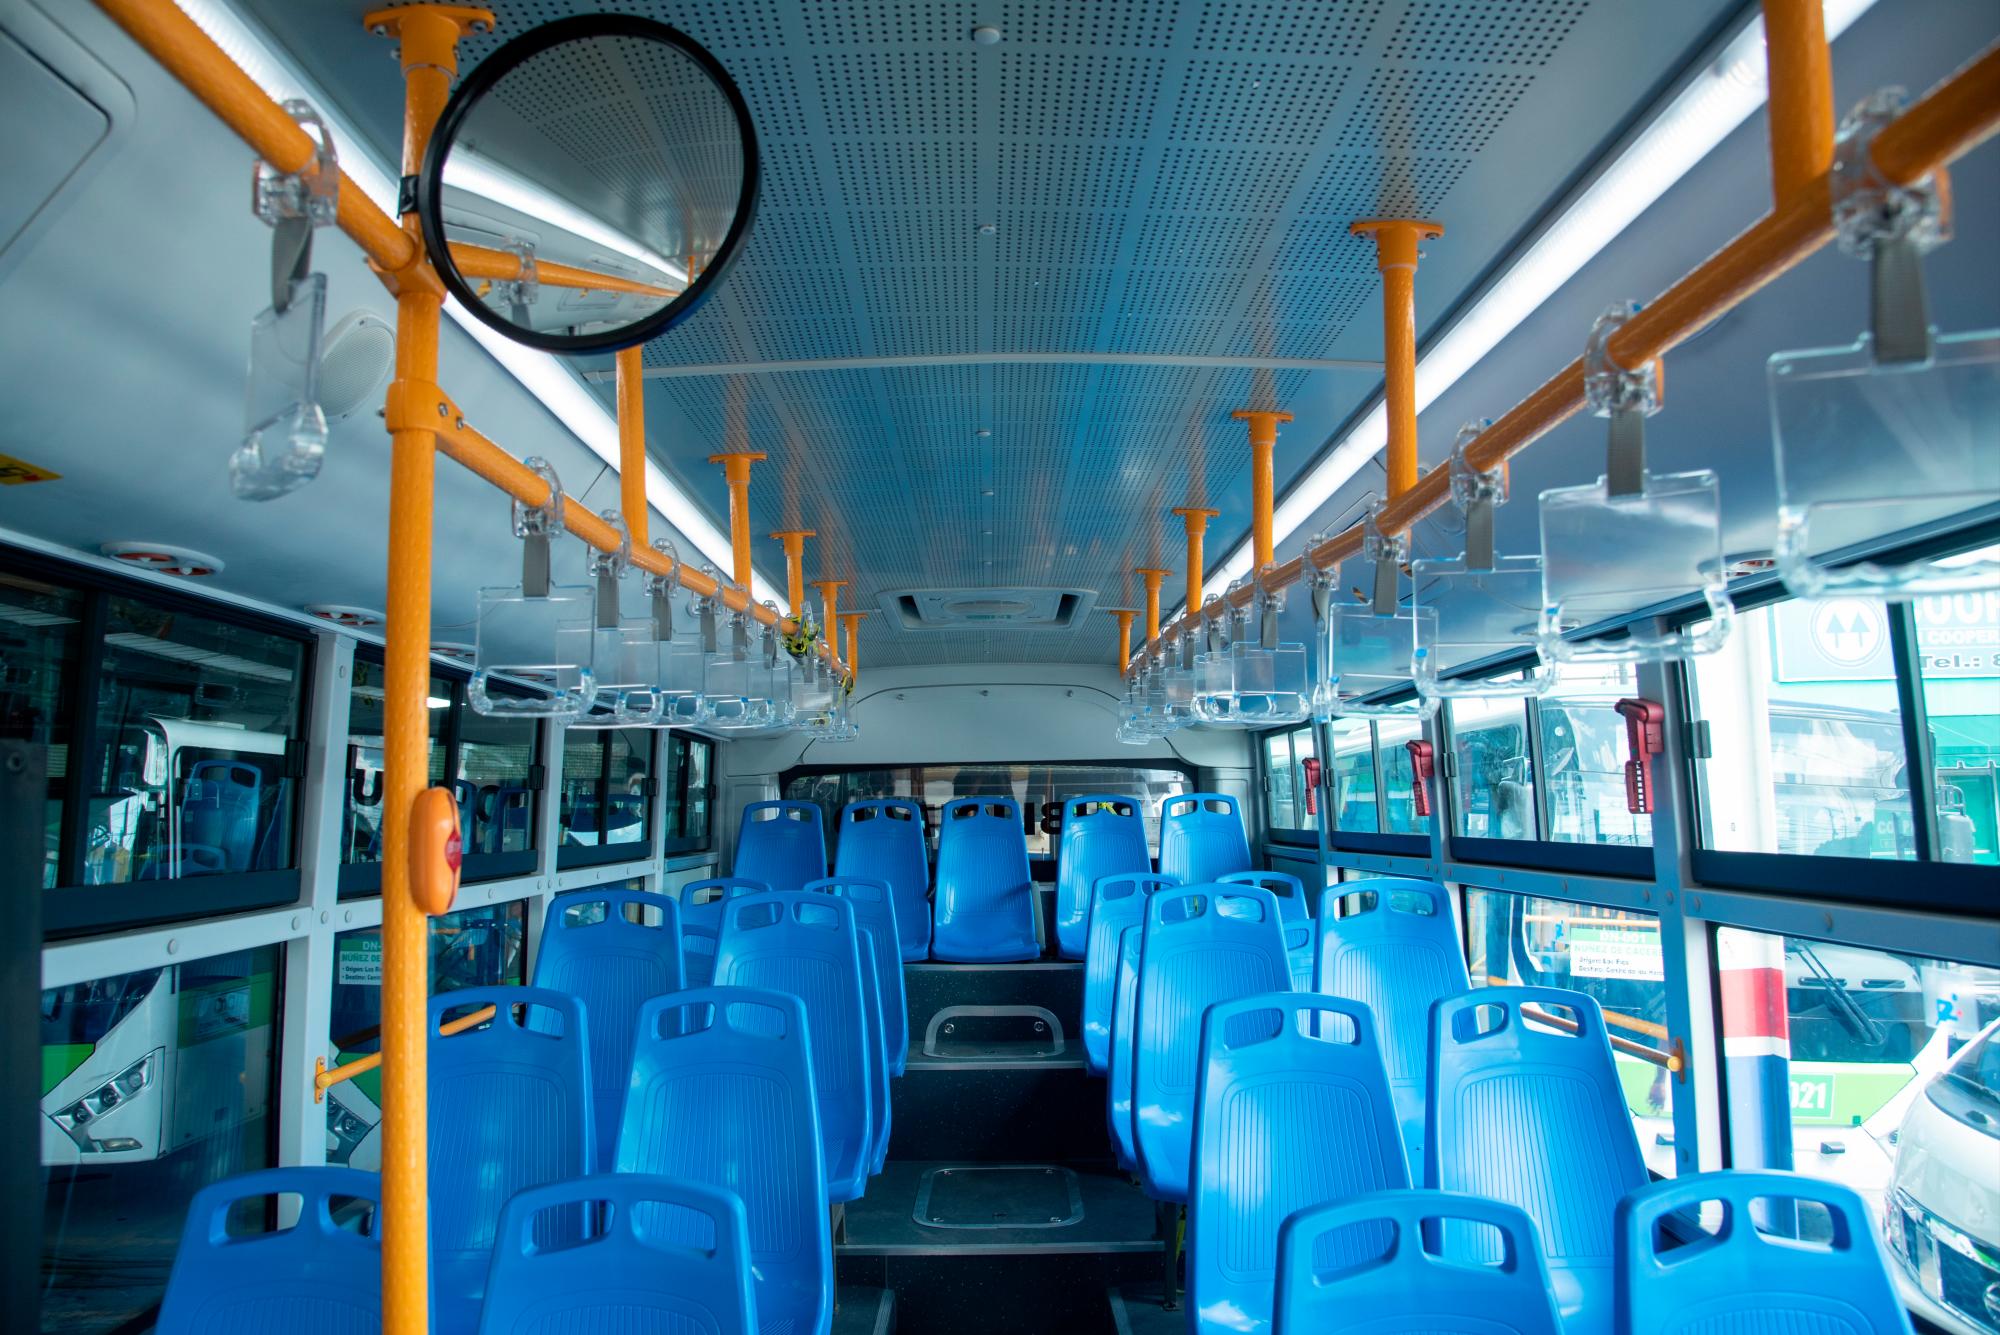 Los autobuses cuentan con modernos sistemas de seguridad como cámara.